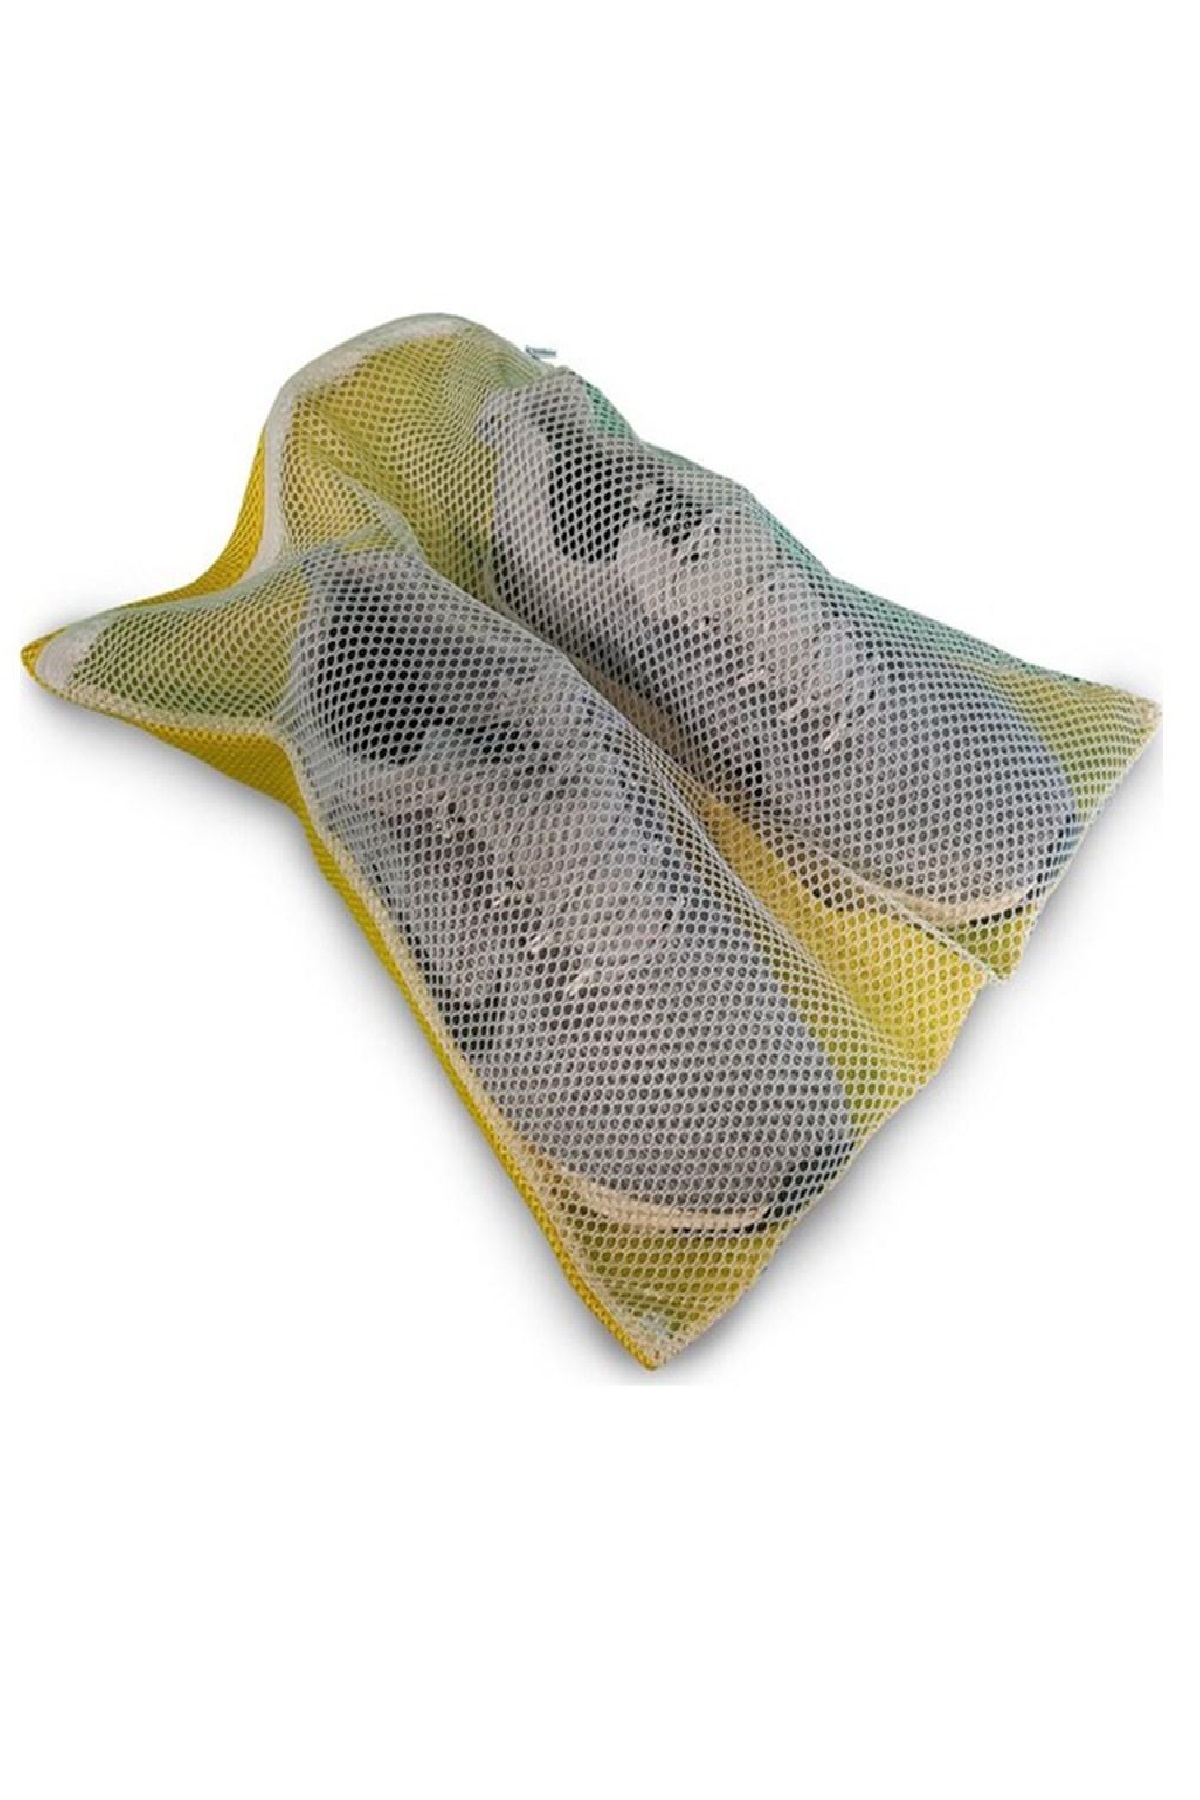 CLZ174 3lü Yıkama File Seti - Ayakkabı Filesi-Plastik Aparatlı Sütyen Yıkama- Çamaşır Yıkama Filesi